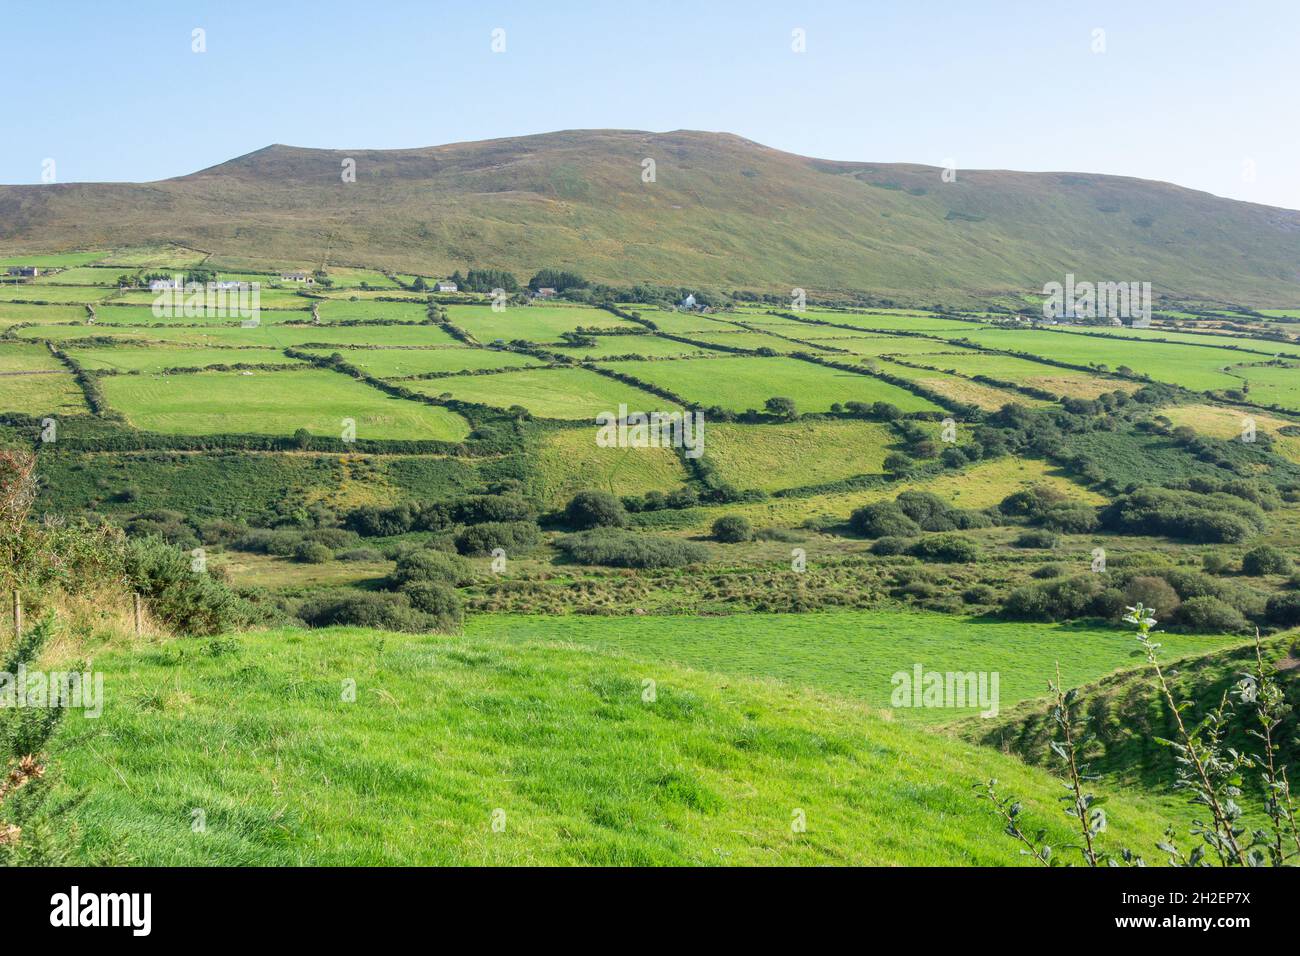 Vue panoramique sur la campagne, péninsule de Dingle (Corca Dhuibhne), comté de Kerry, République d'Irlande Banque D'Images